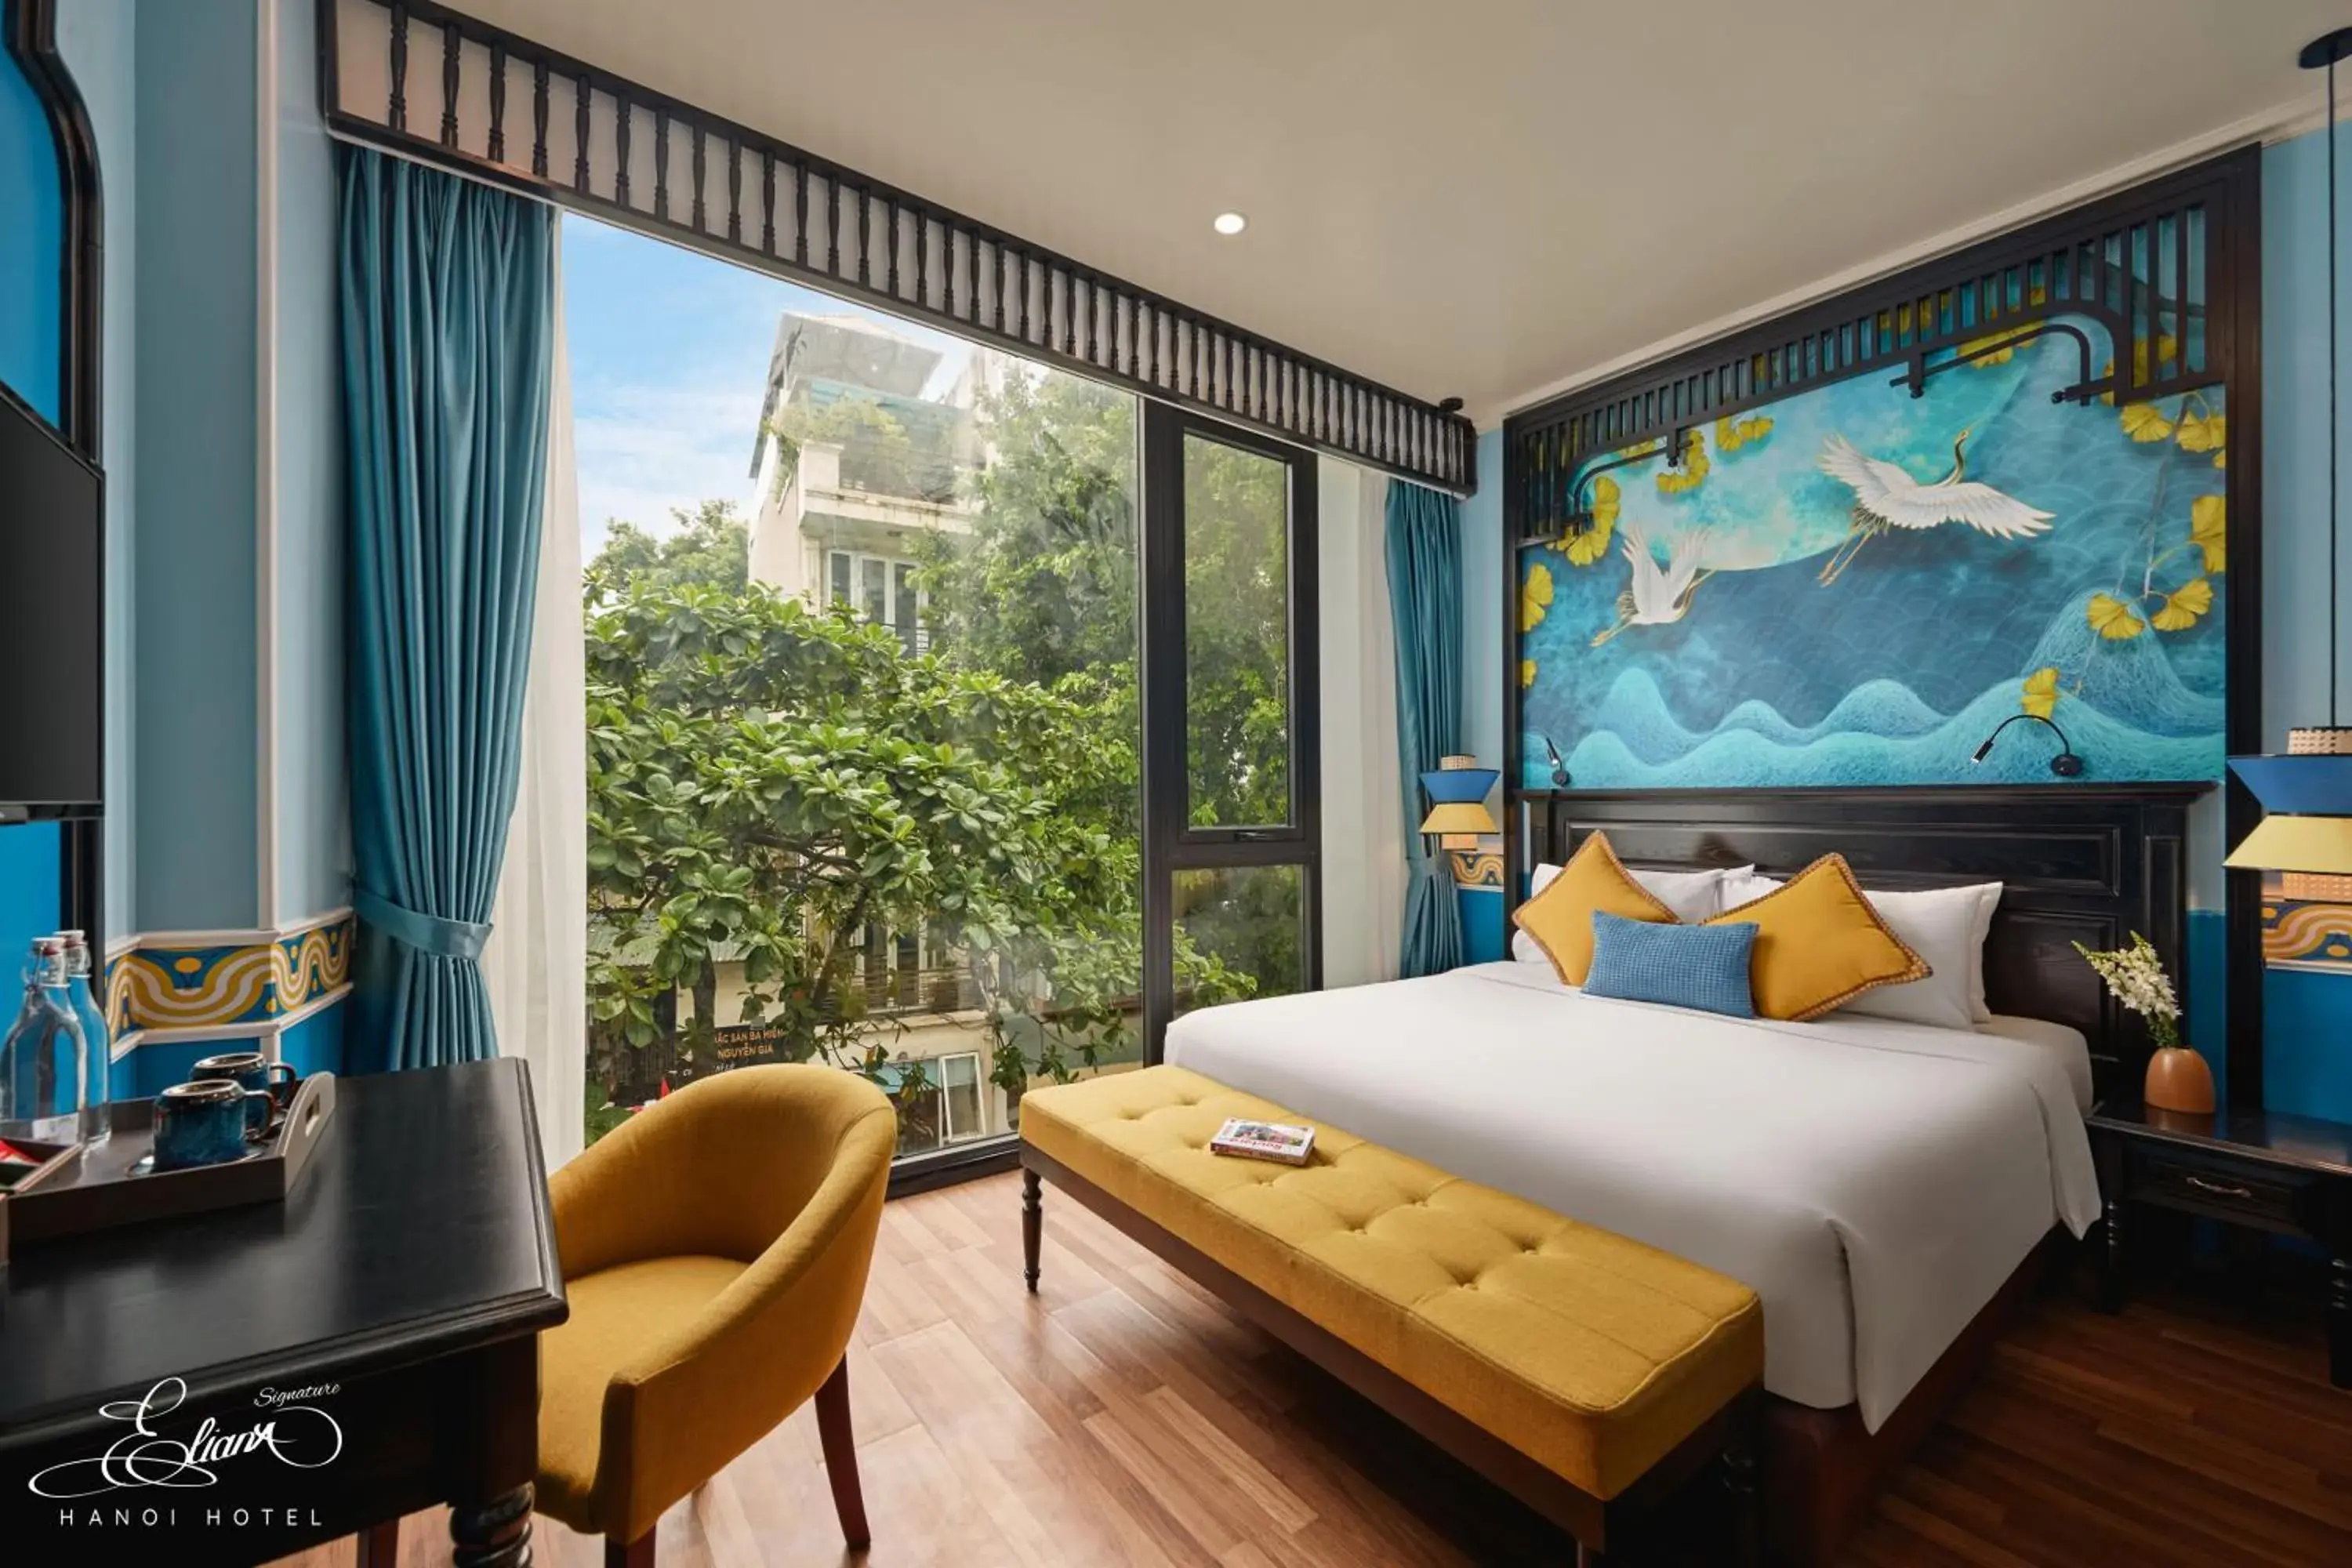 Bed in Eliana Signature Hanoi Hotel